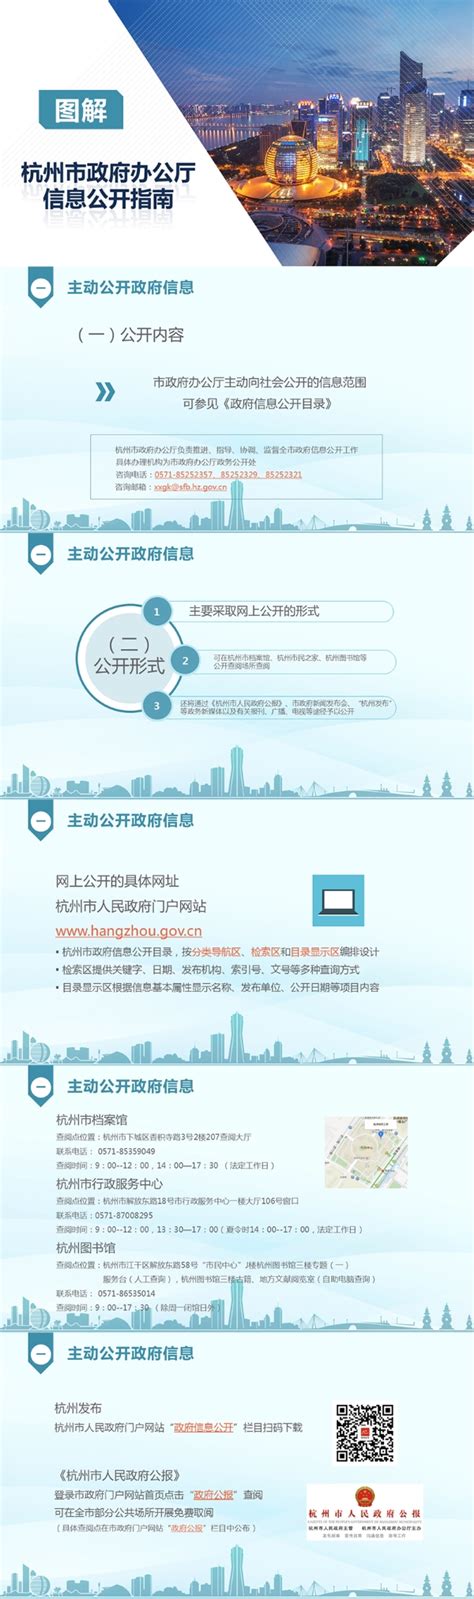 杭州市人民政府门户网站 政府信息公开指南